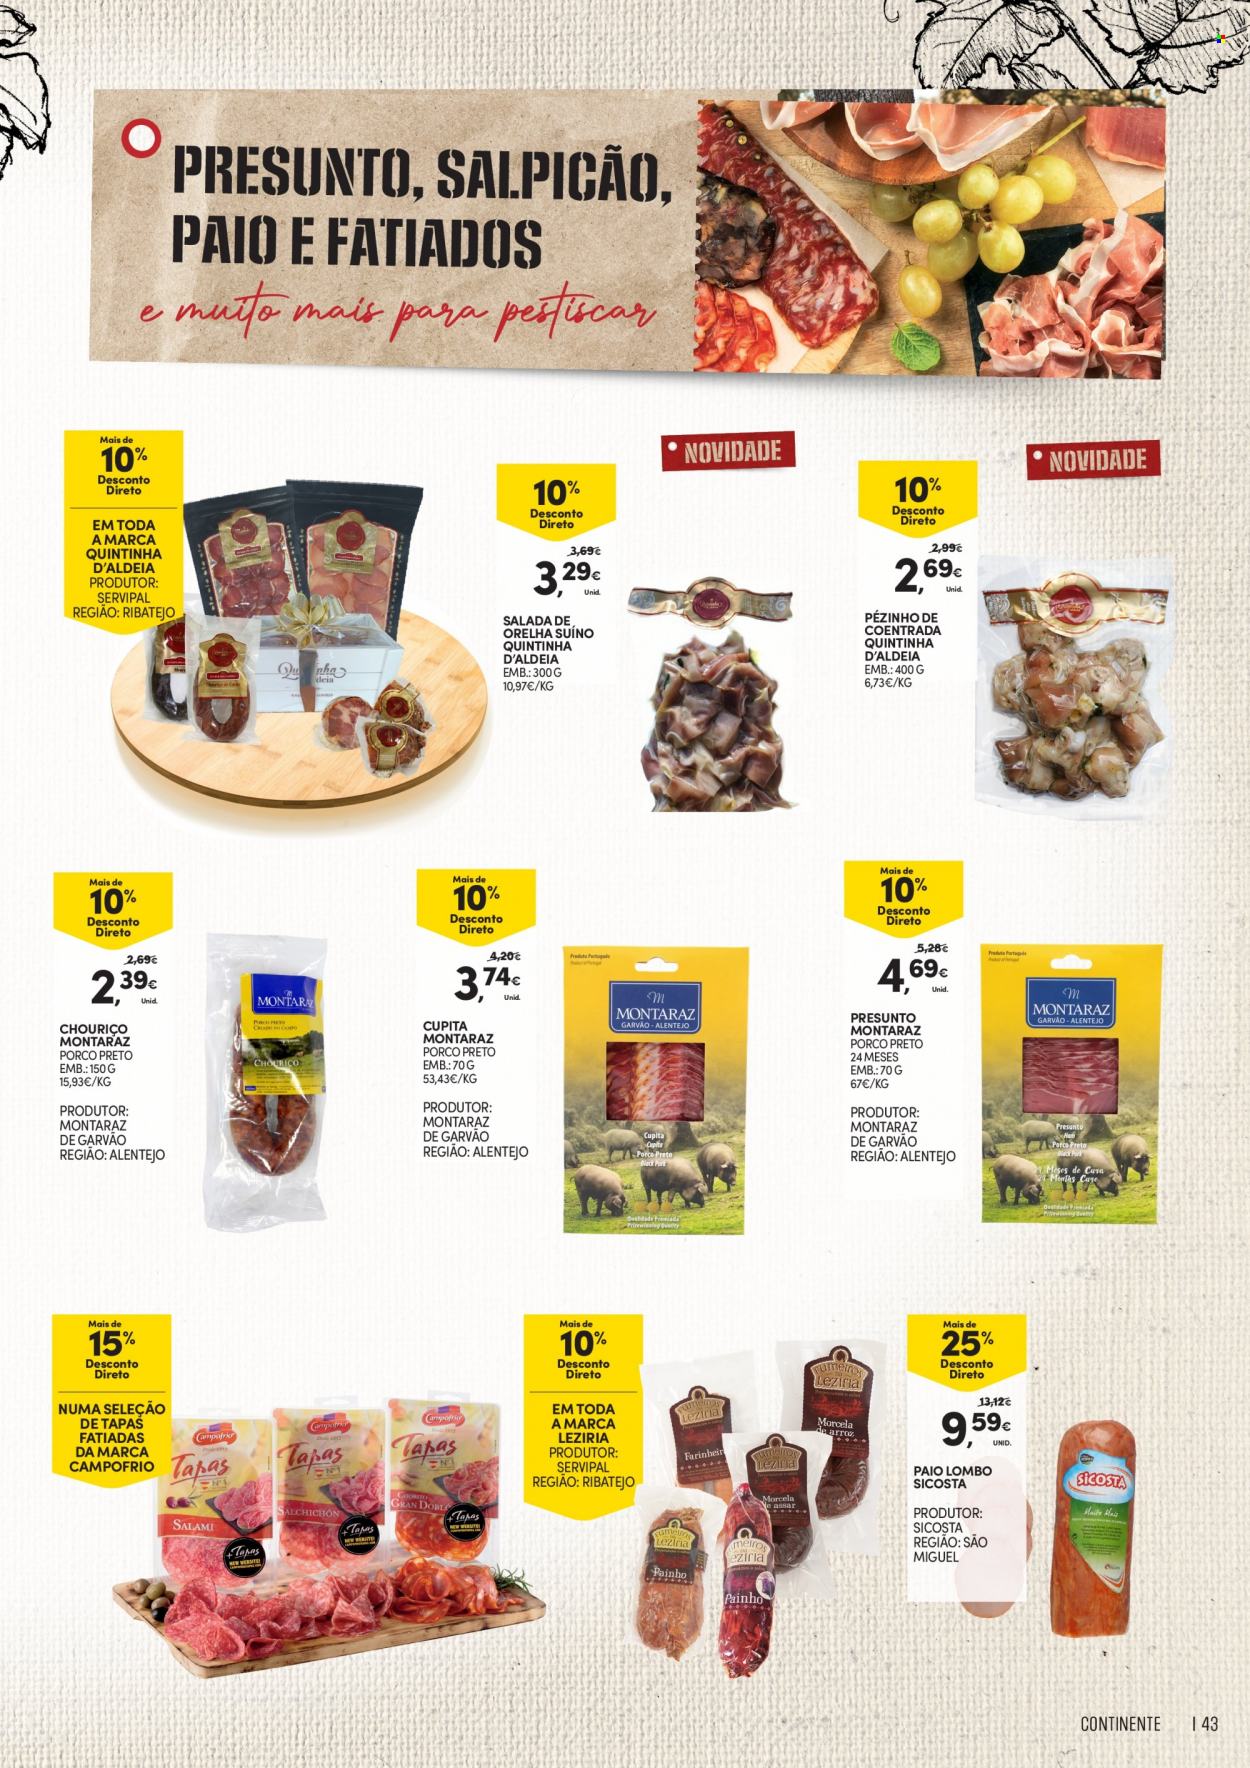 thumbnail - Folheto Continente Modelo - 21.9.2021 - 18.10.2021 - Produtos em promoção - salada, lombo, presunto, chouriço, tapas. Página 43.